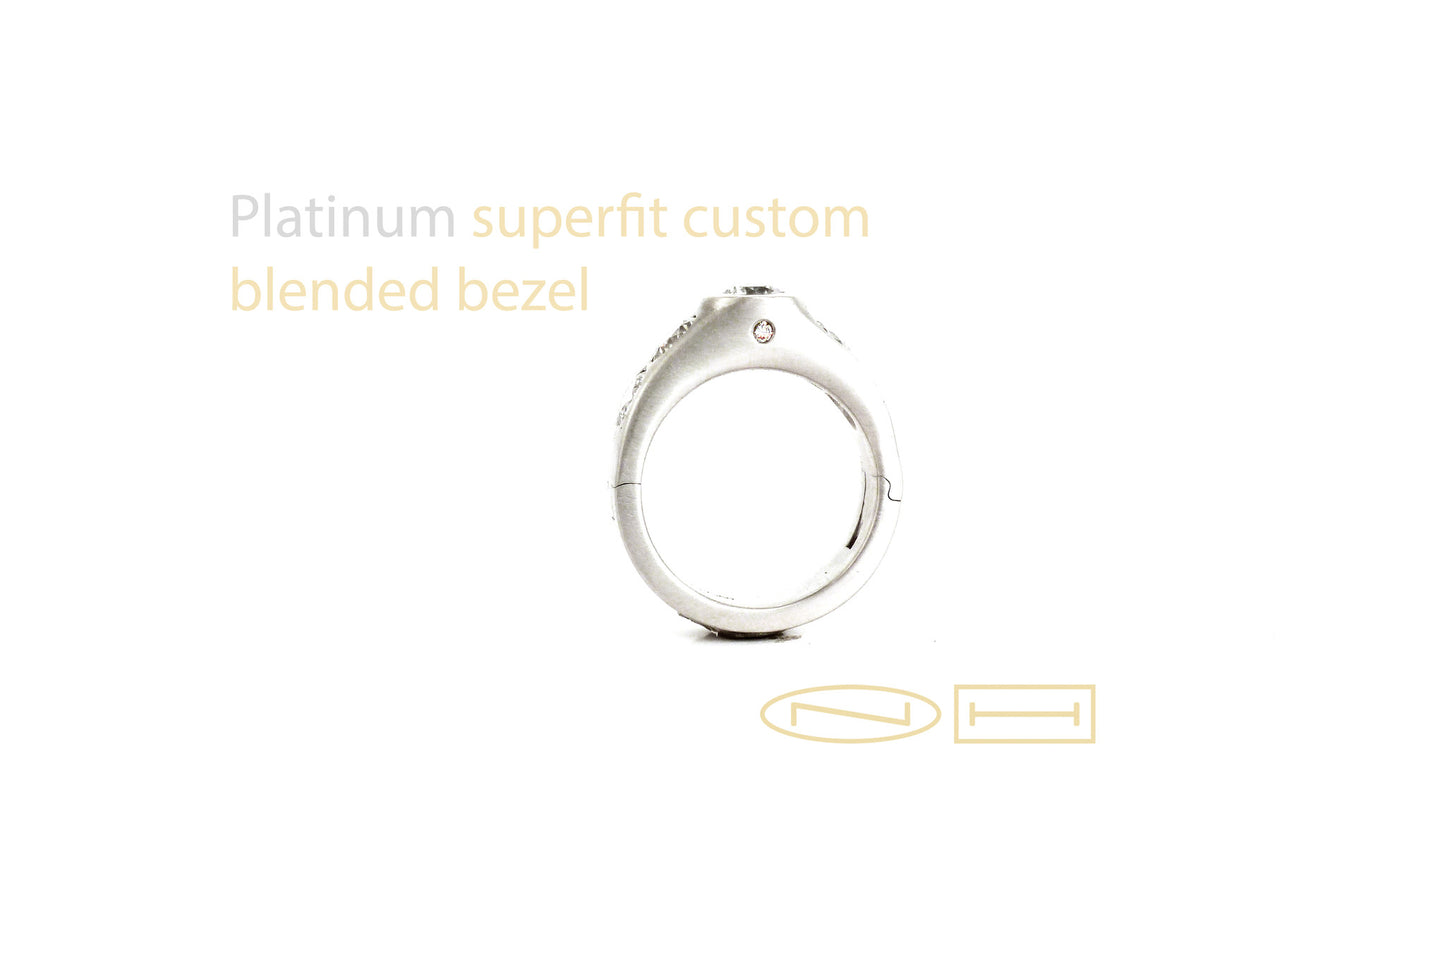 Custom blended bezel superfit hinged shank